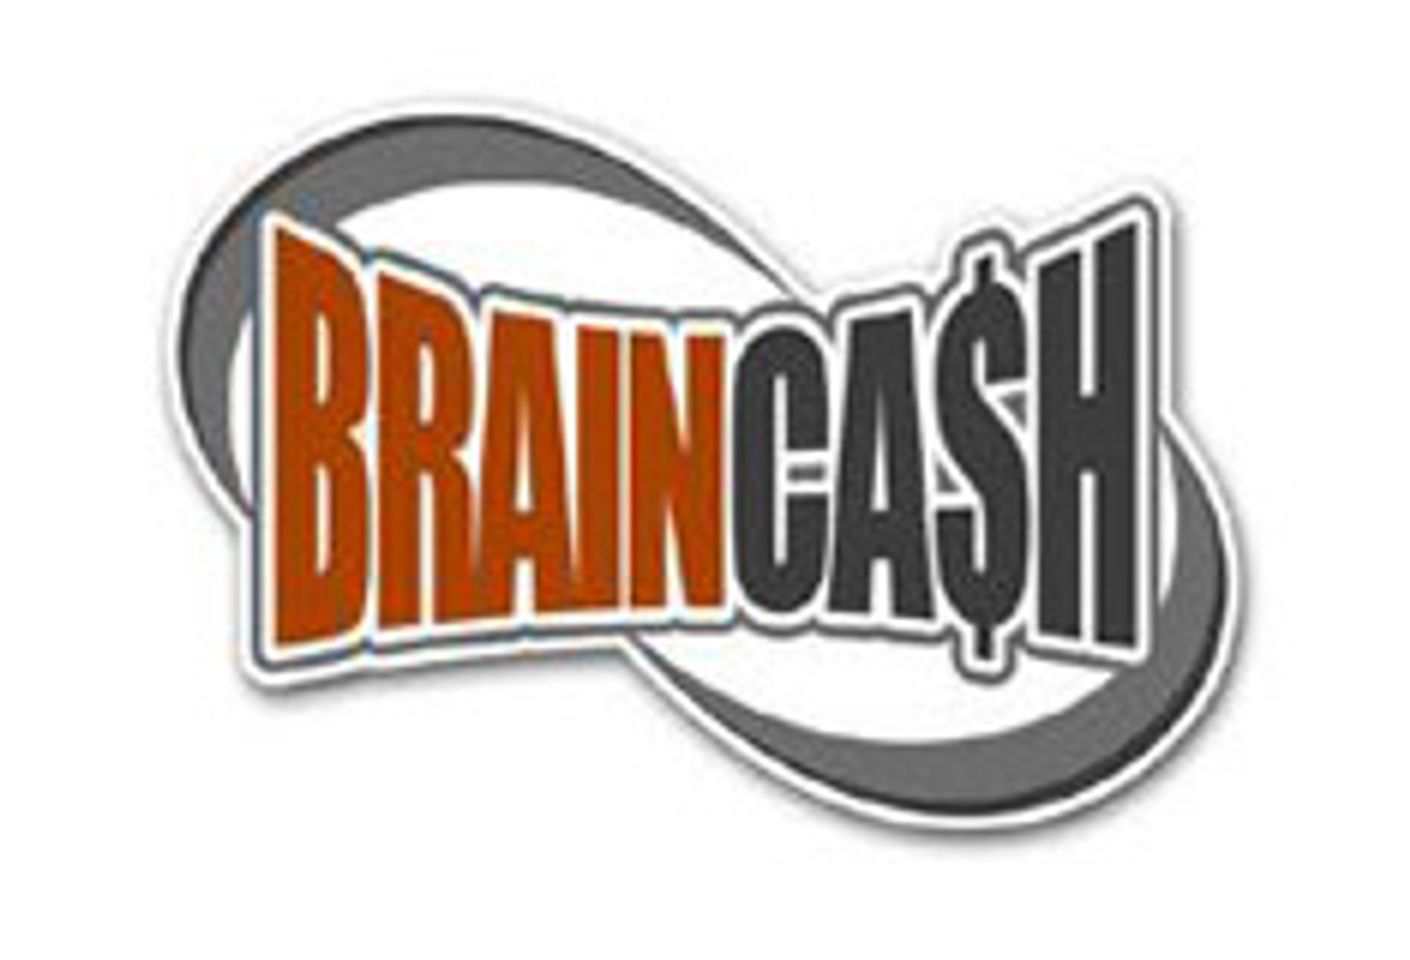 Braincash Releases FeetFrenzy.com and FuckThatAsian.com